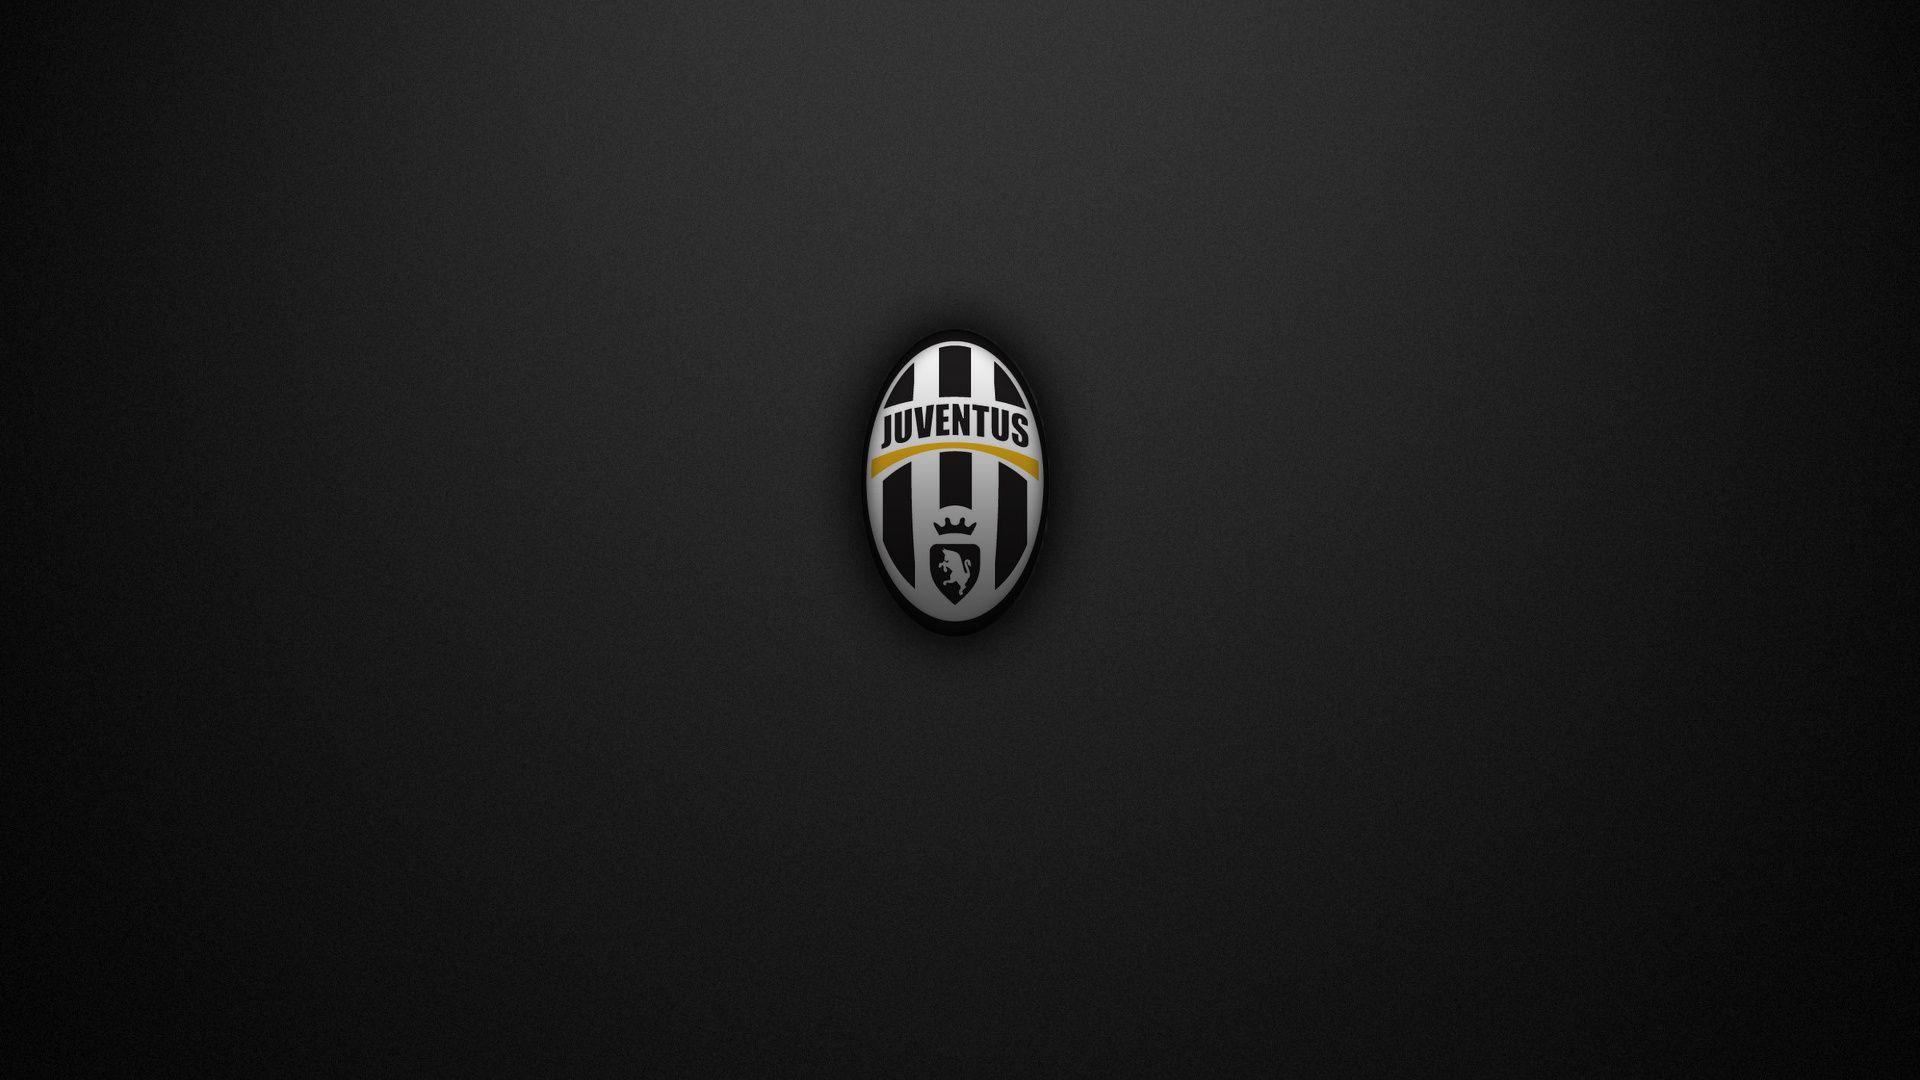 Juventus Wallpaper, Sports Wallpaper, Clubs, Juventus